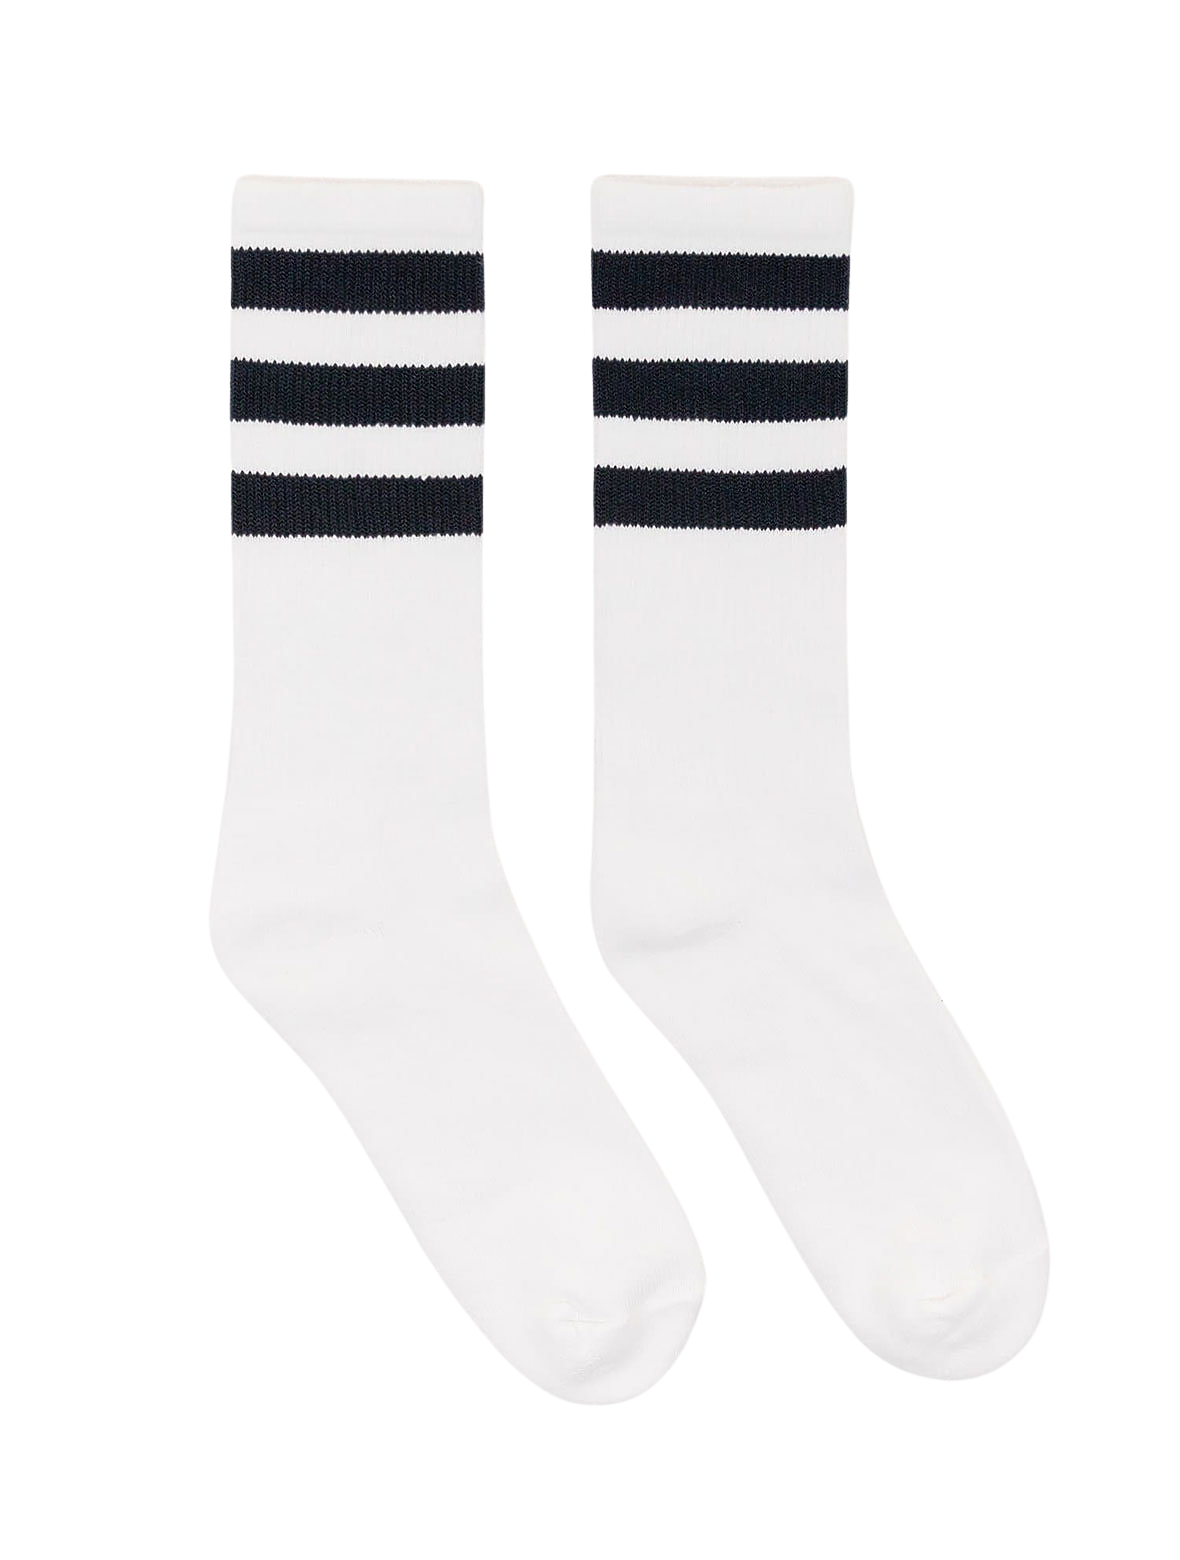 Vintage Socks - White Cotton - Dark Navy Stripes